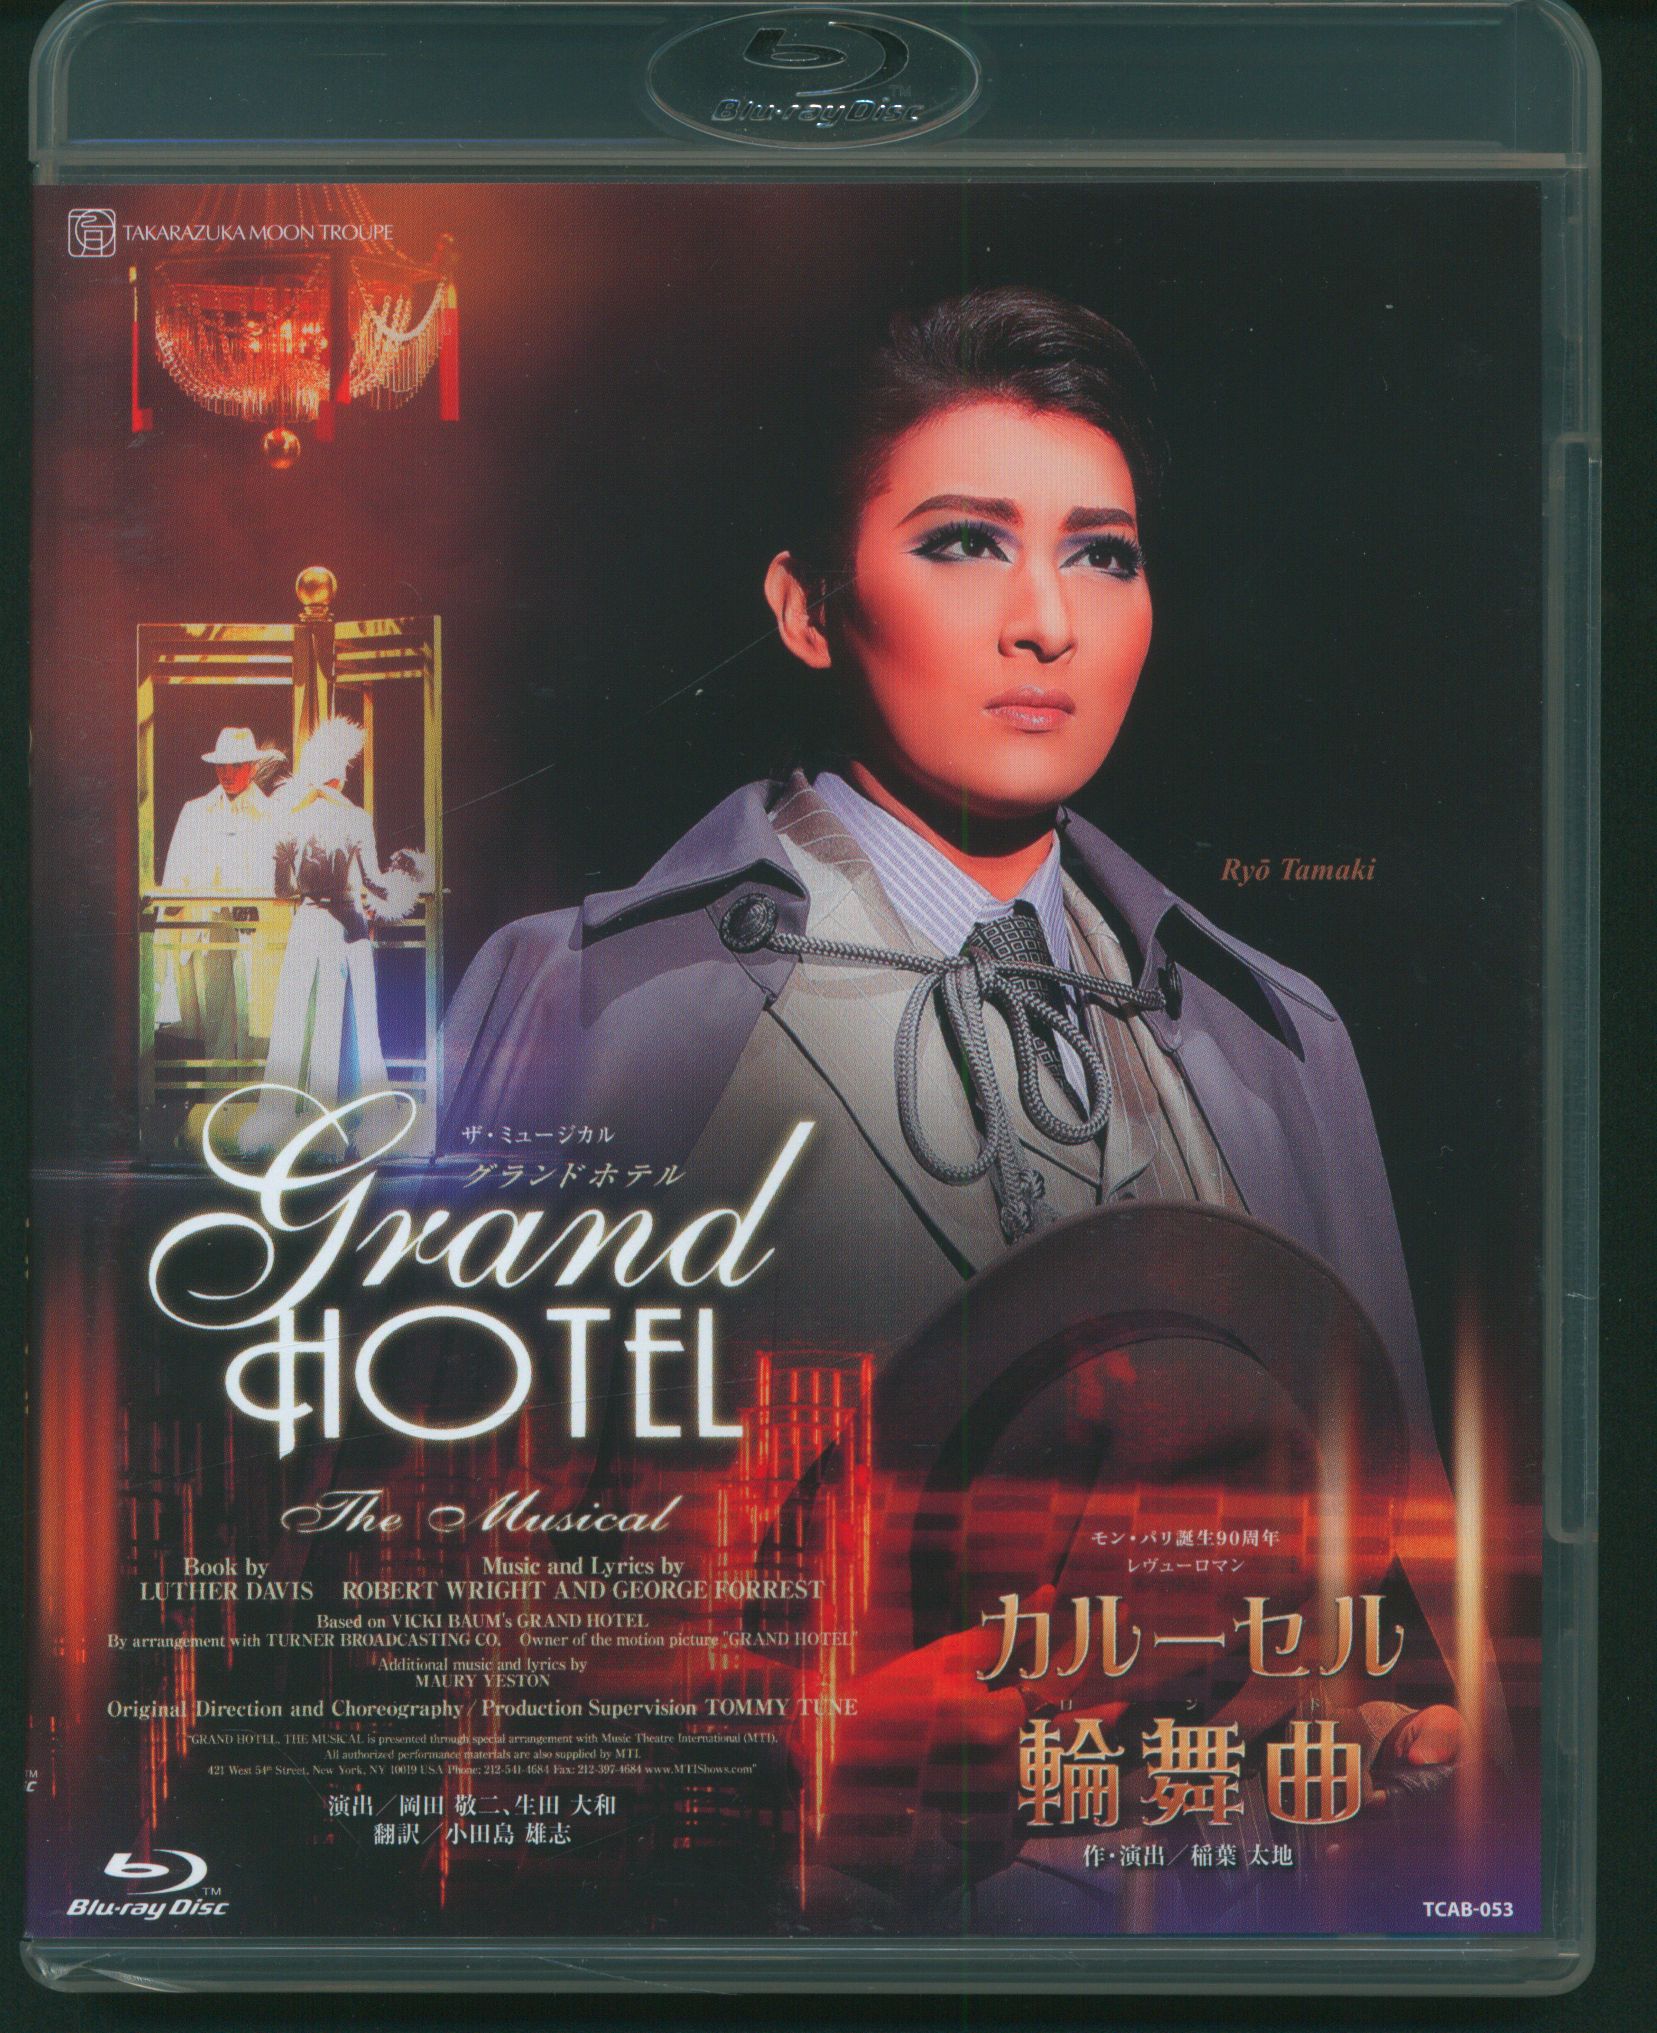 宝塚歌劇団 月組 グランドホテル/カルーセル輪舞曲 Blu-ray 珠城りょう 